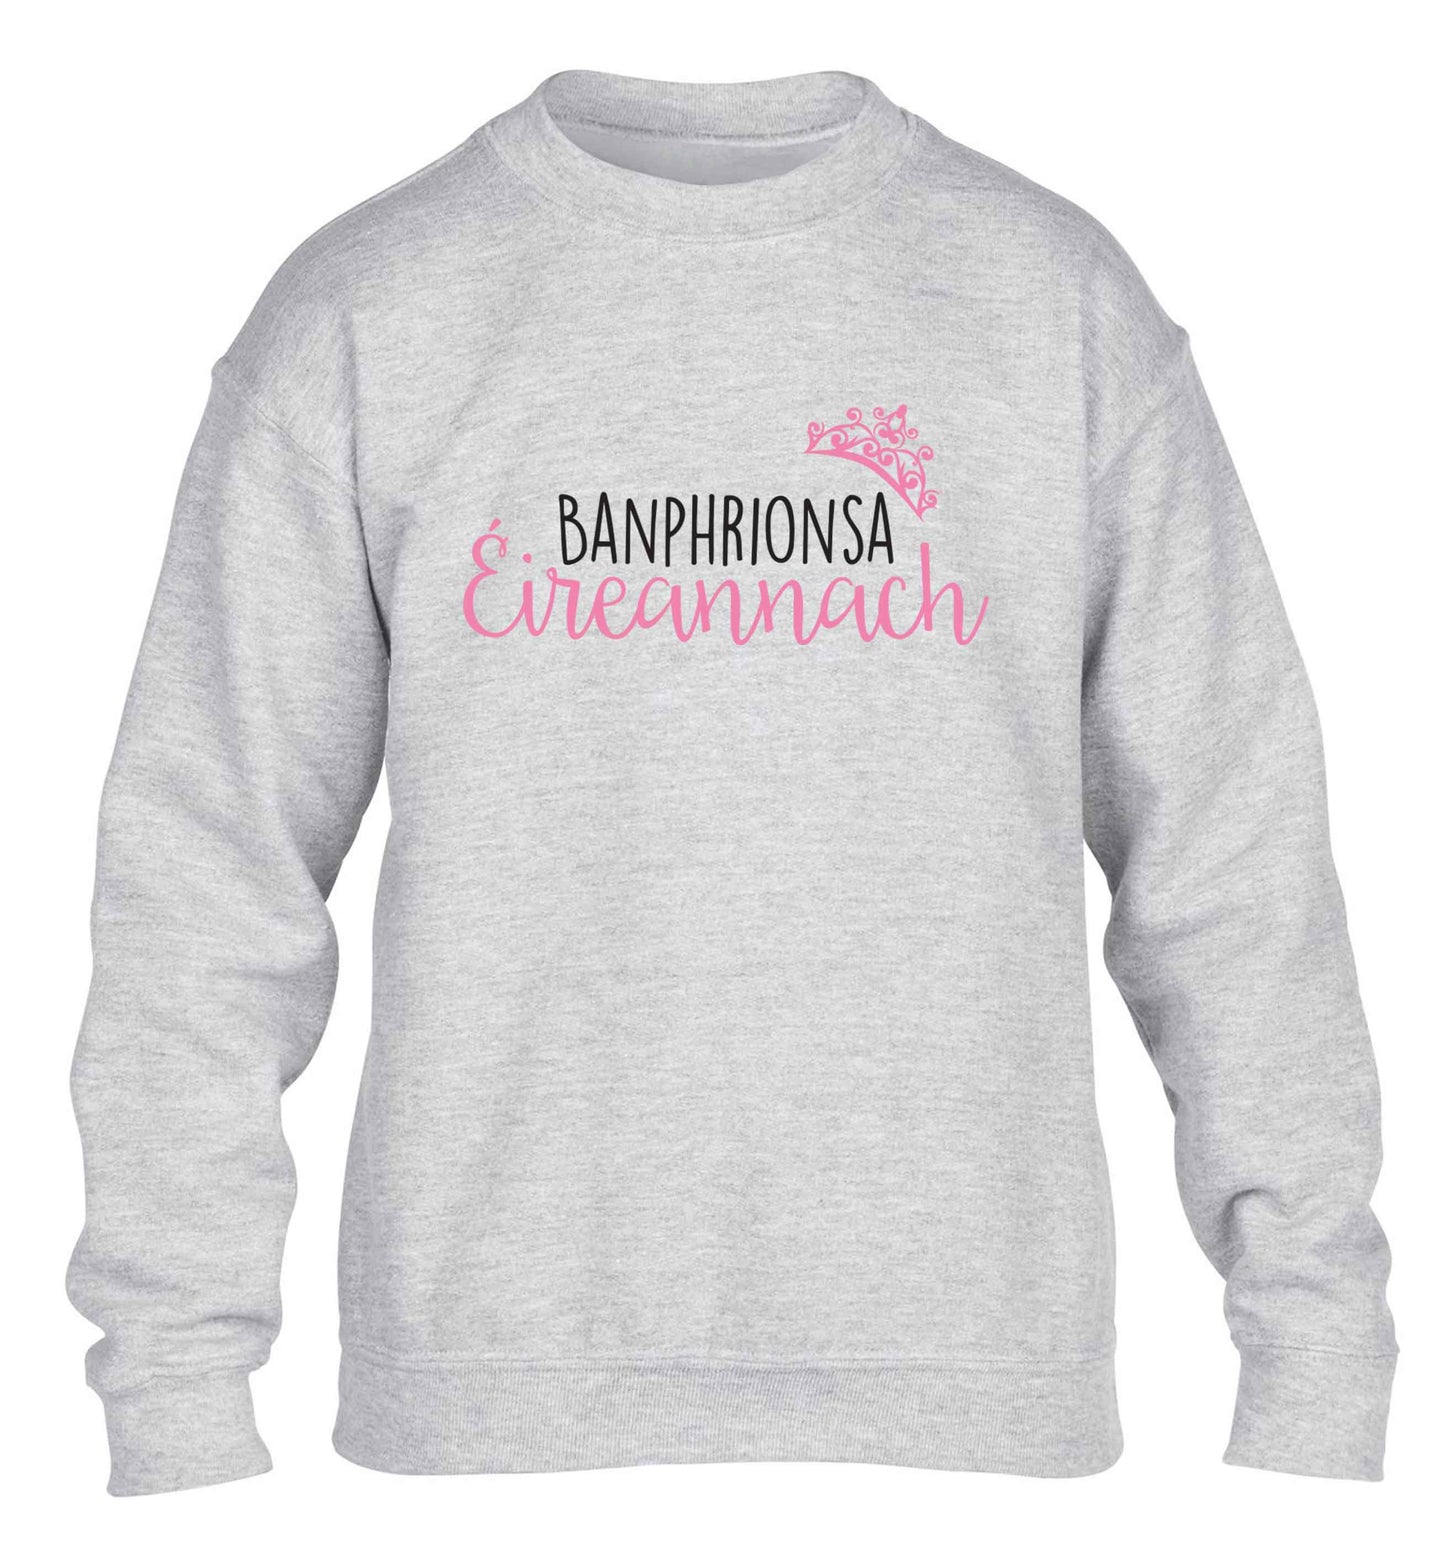 Banphrionsa eireannach children's grey sweater 12-13 Years